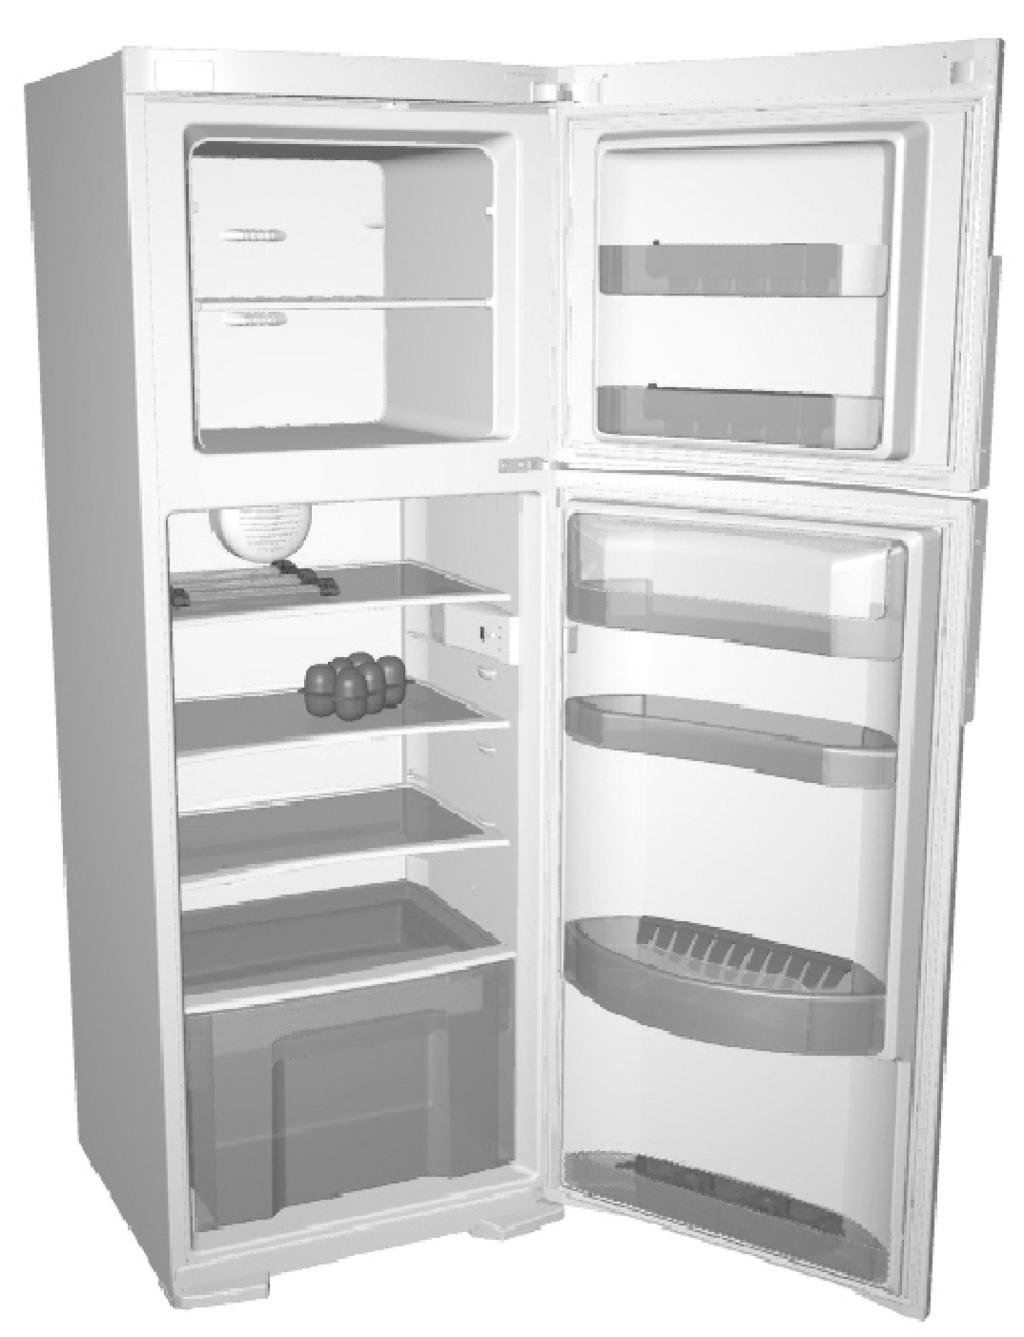 Beschreibung des Geräts A Kühlschrank B Gefrierschrank 1 Ventilator* 2 Innenleuchte 3 Kühlschrank-Ablage (höhenverstellbar) 4 Faltbare Eierbox (geschlossen für 6, offen für 12 Eier) 5 Obst- und